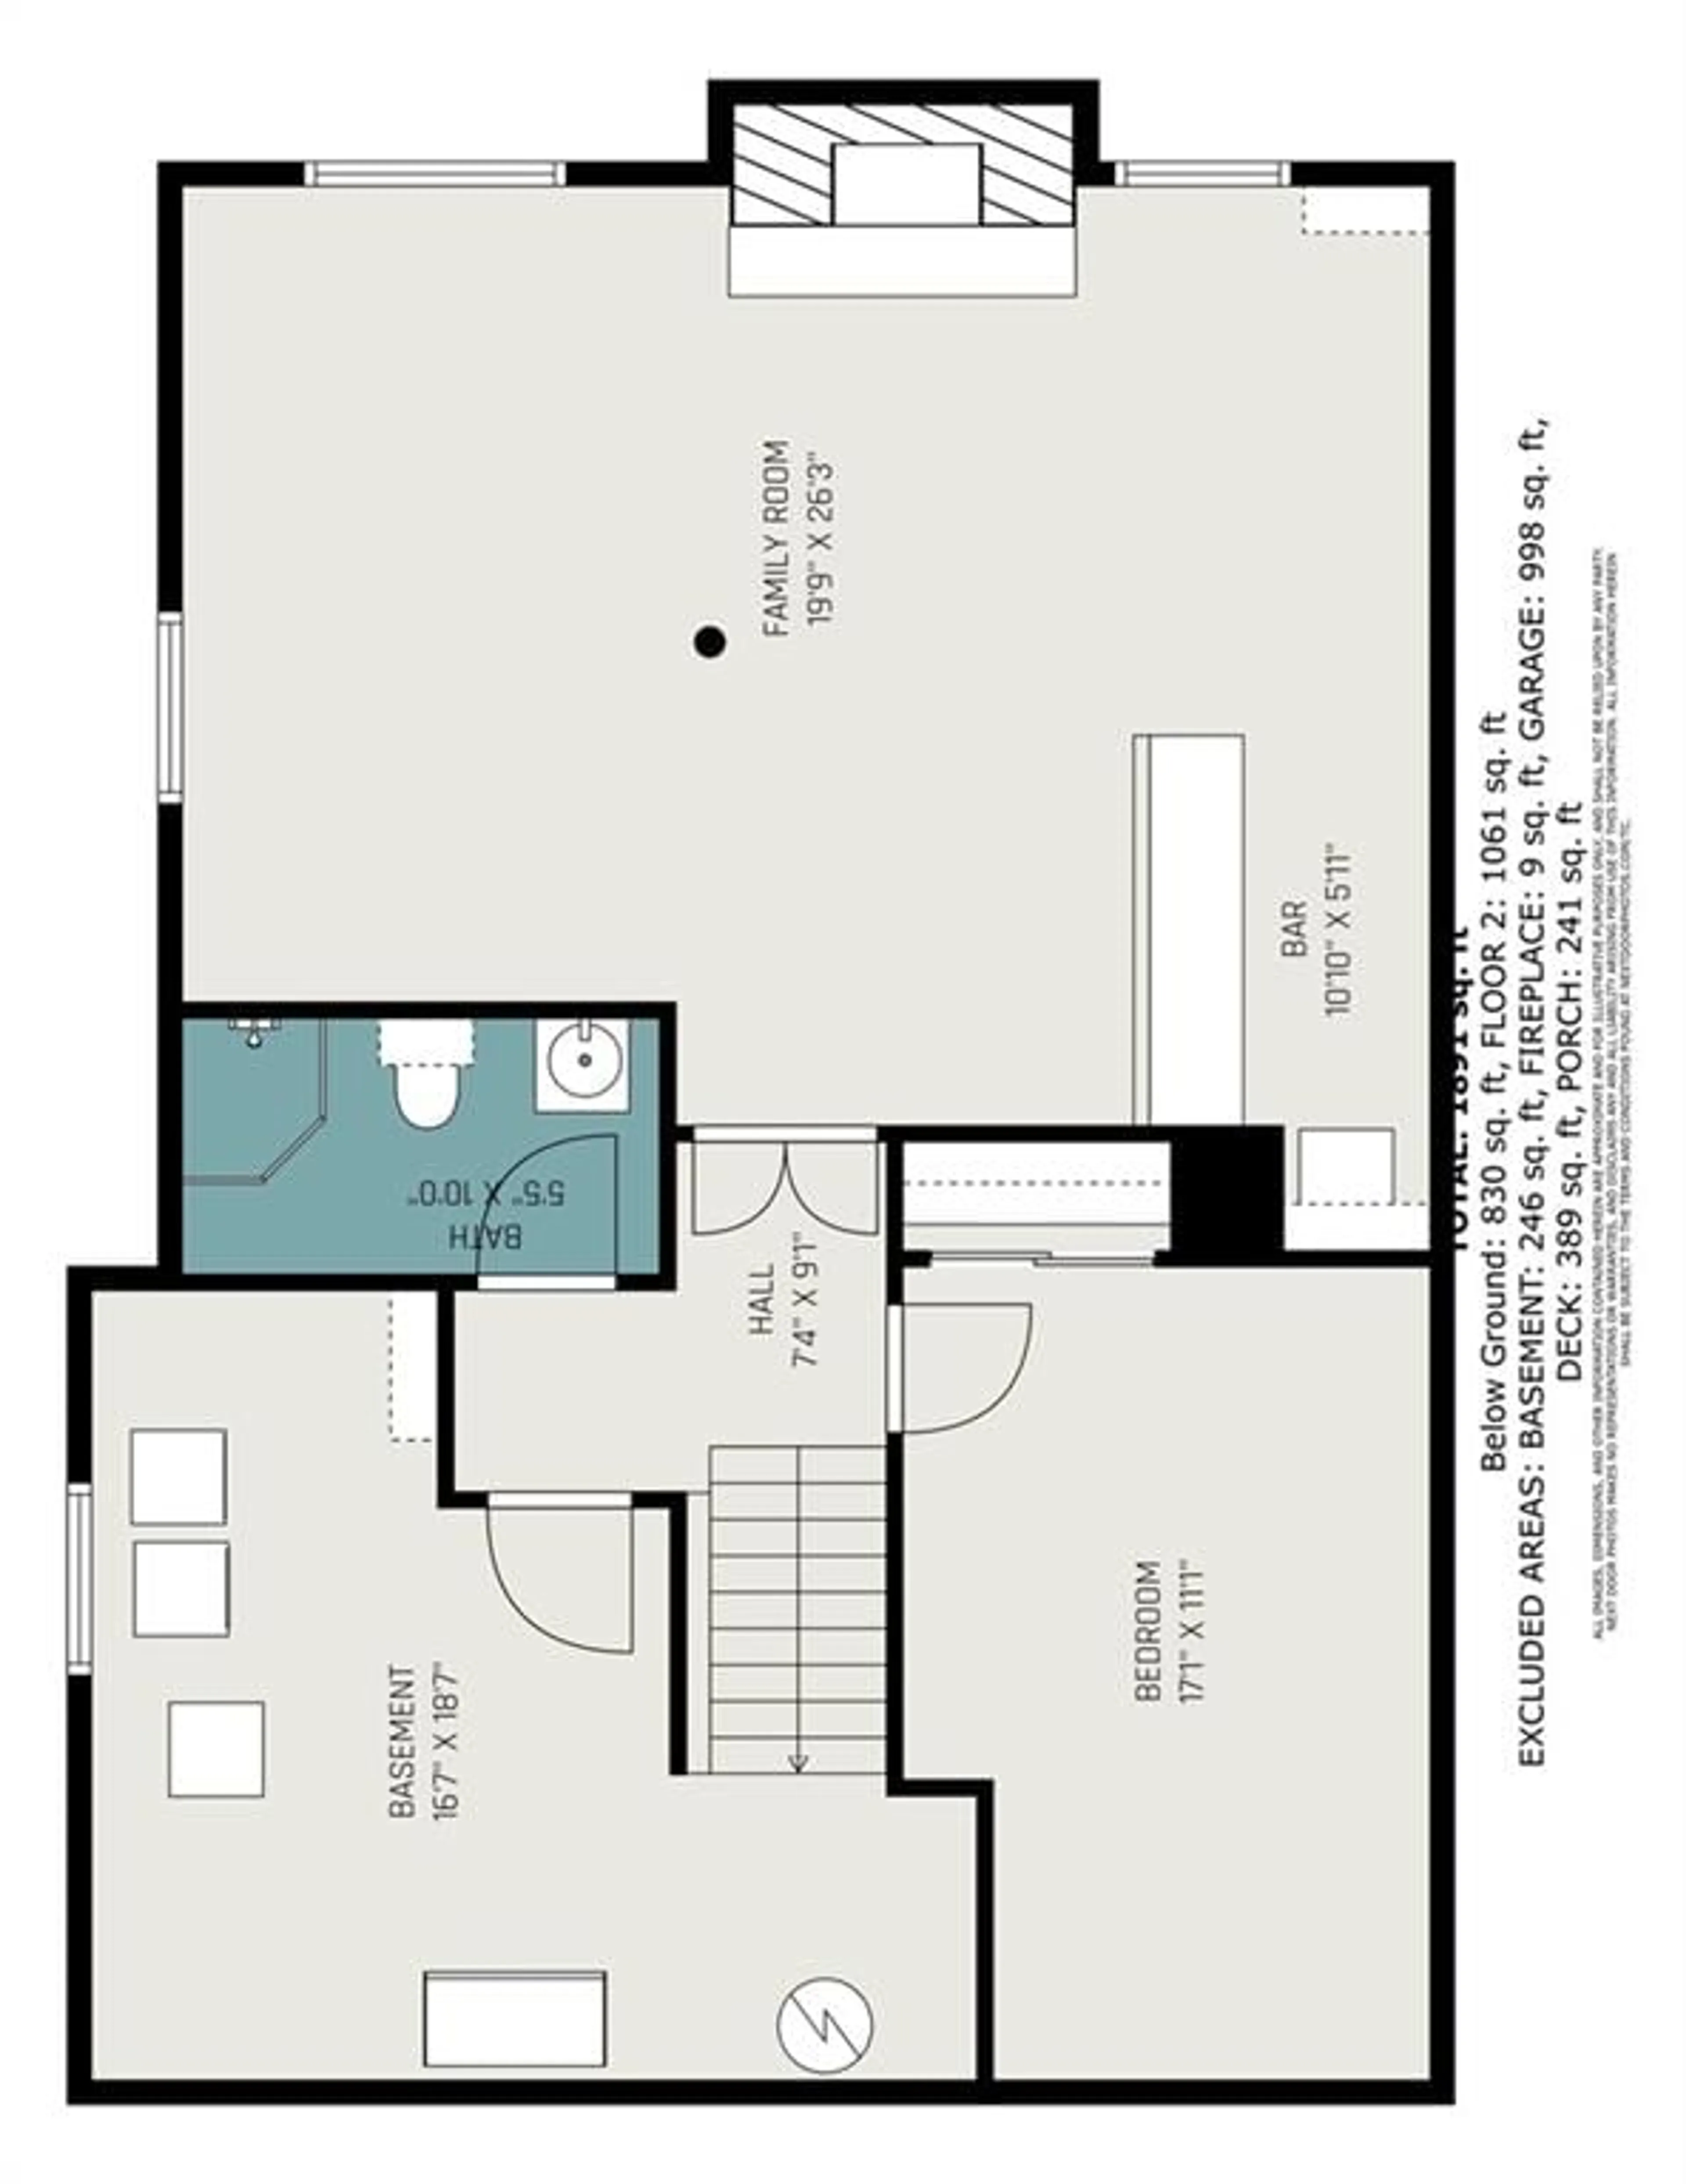 Floor plan for 89 PAUL Dr, Lanark Ontario K0G 1K0